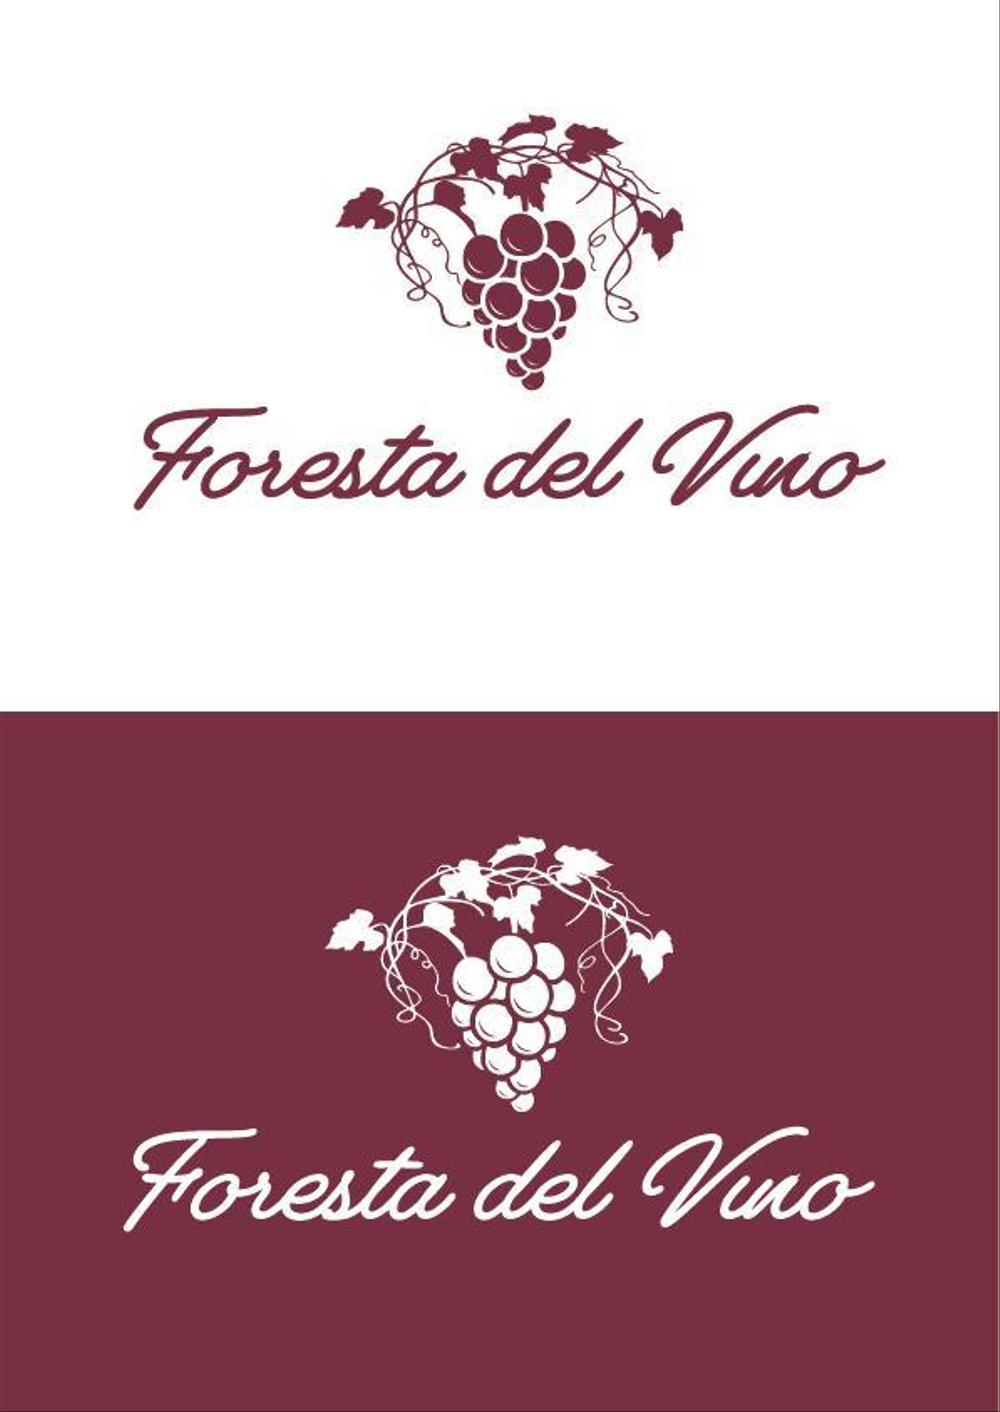 A_Foresta del Vino2.jpg